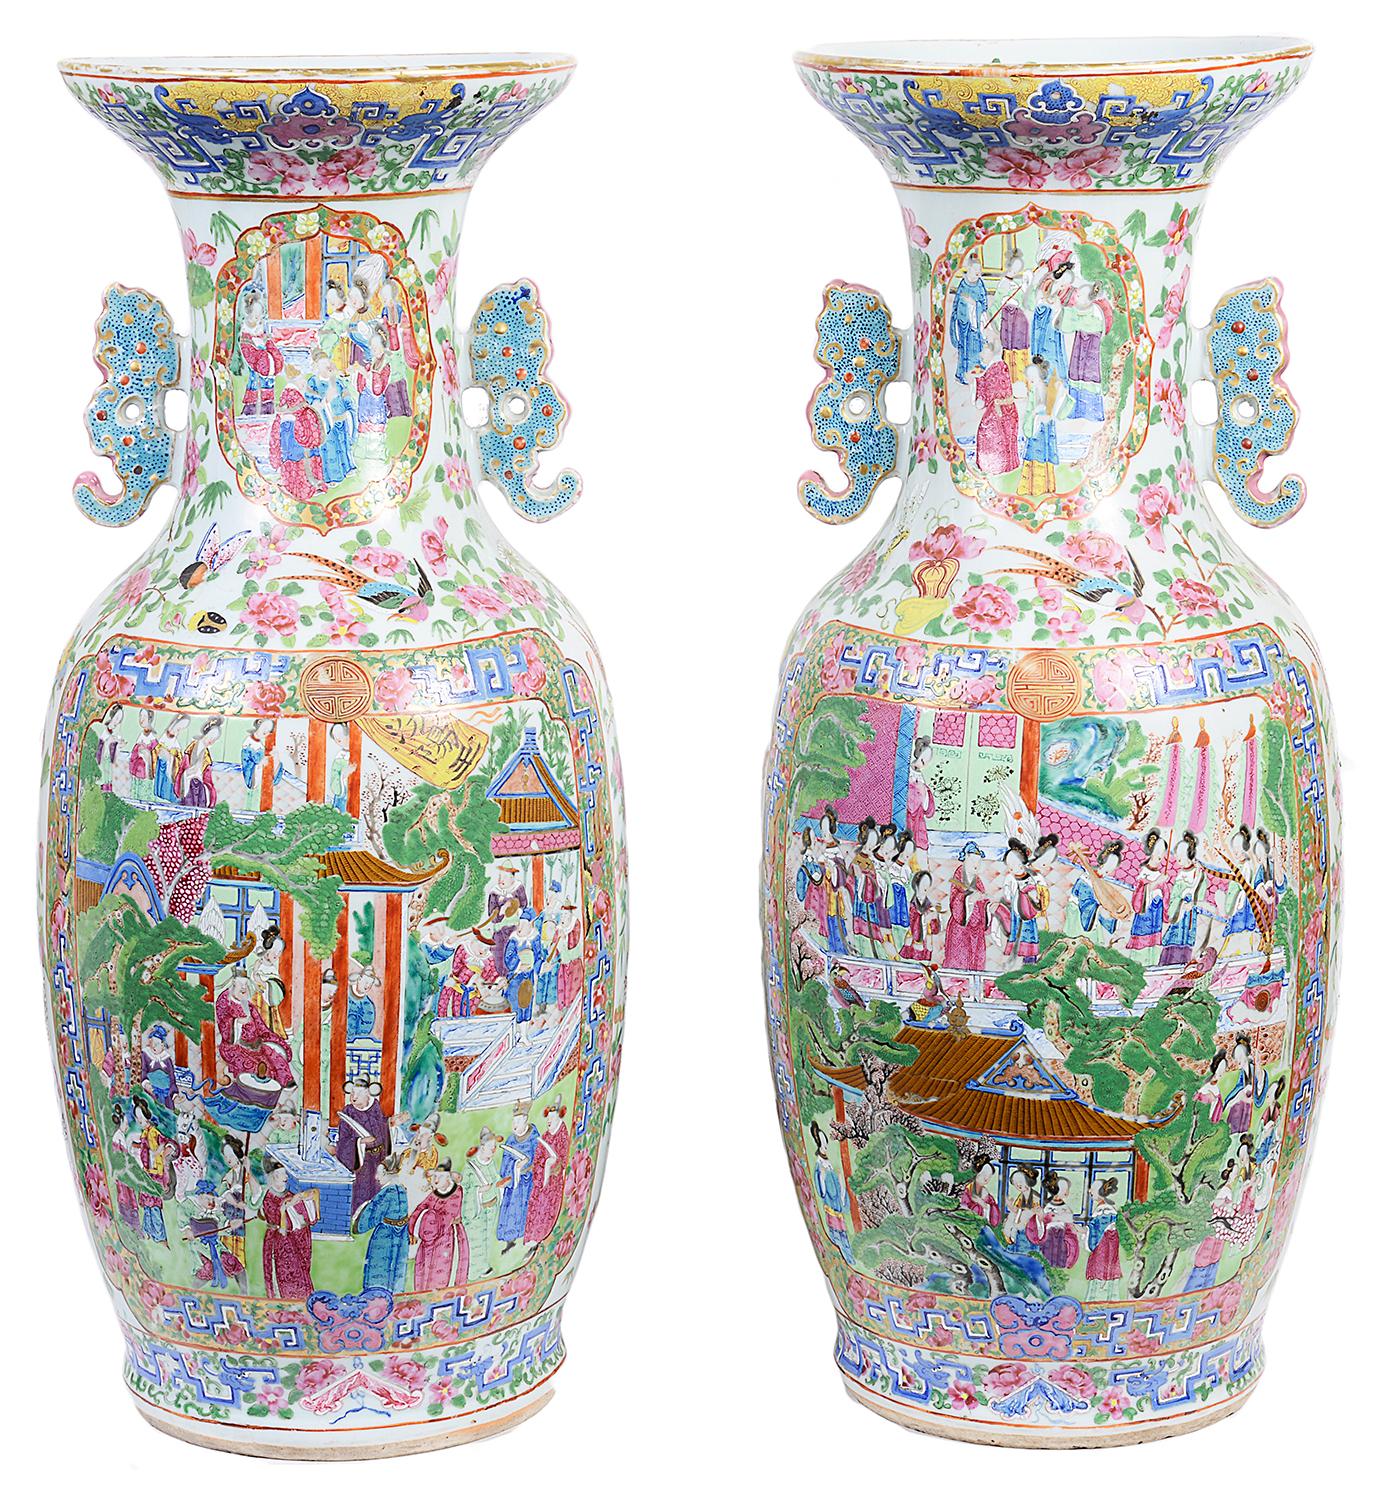 Eine imposante und sehr gute Qualität Paar Kantonesisch / Rose Medaillon Vase. Die handgemalten Tafeln zeigen Innenszenen von Höflingen und ihren Dienern, die von klassischen Motiven, Blumen und Schmetterlingen umrahmt sind, und haben jeweils